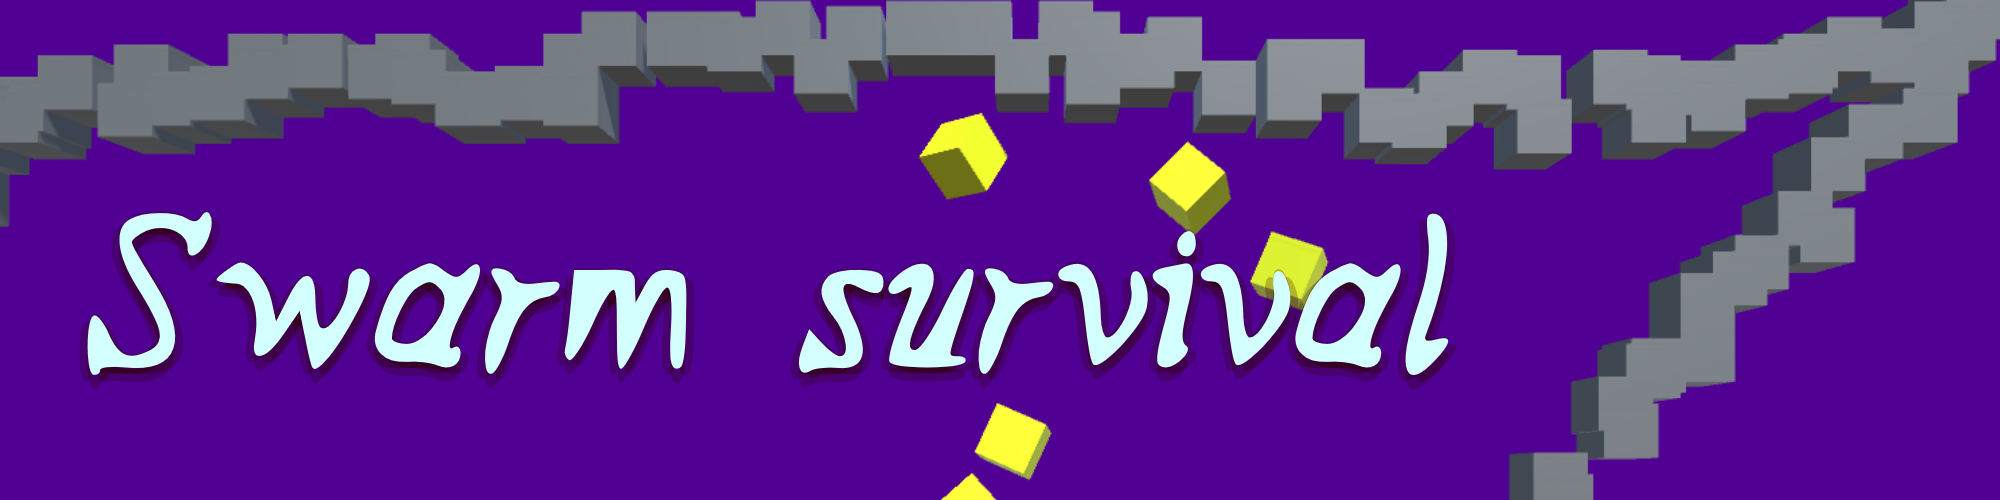 Swarm survival